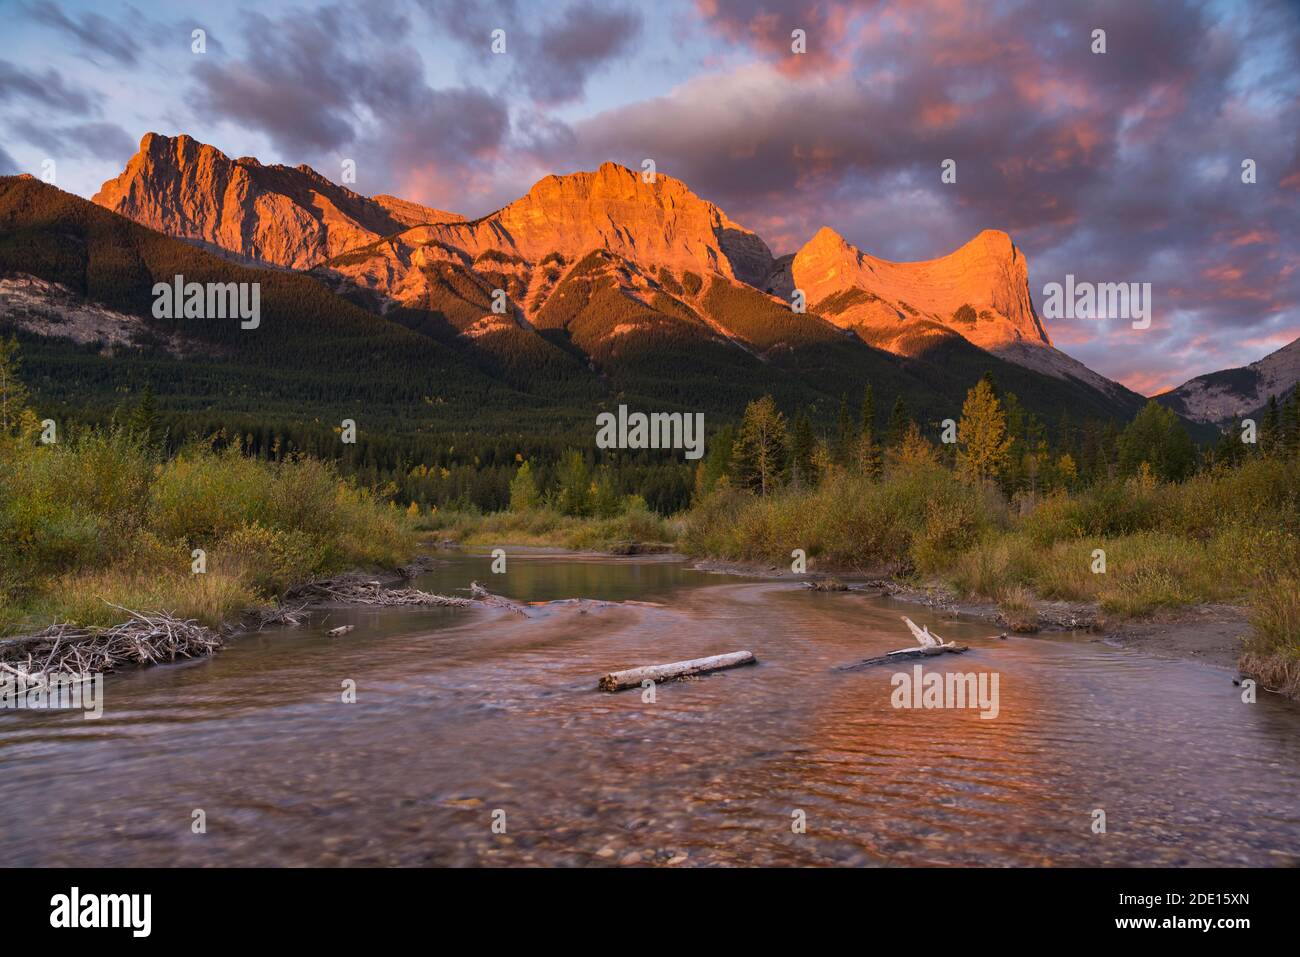 Lever du soleil et Alpenglow sur le mont Lawrence Grassi et Ha Ling Peak en automne, Canmore, Alberta, Rocheuses canadiennes, Canada, Amérique du Nord Banque D'Images